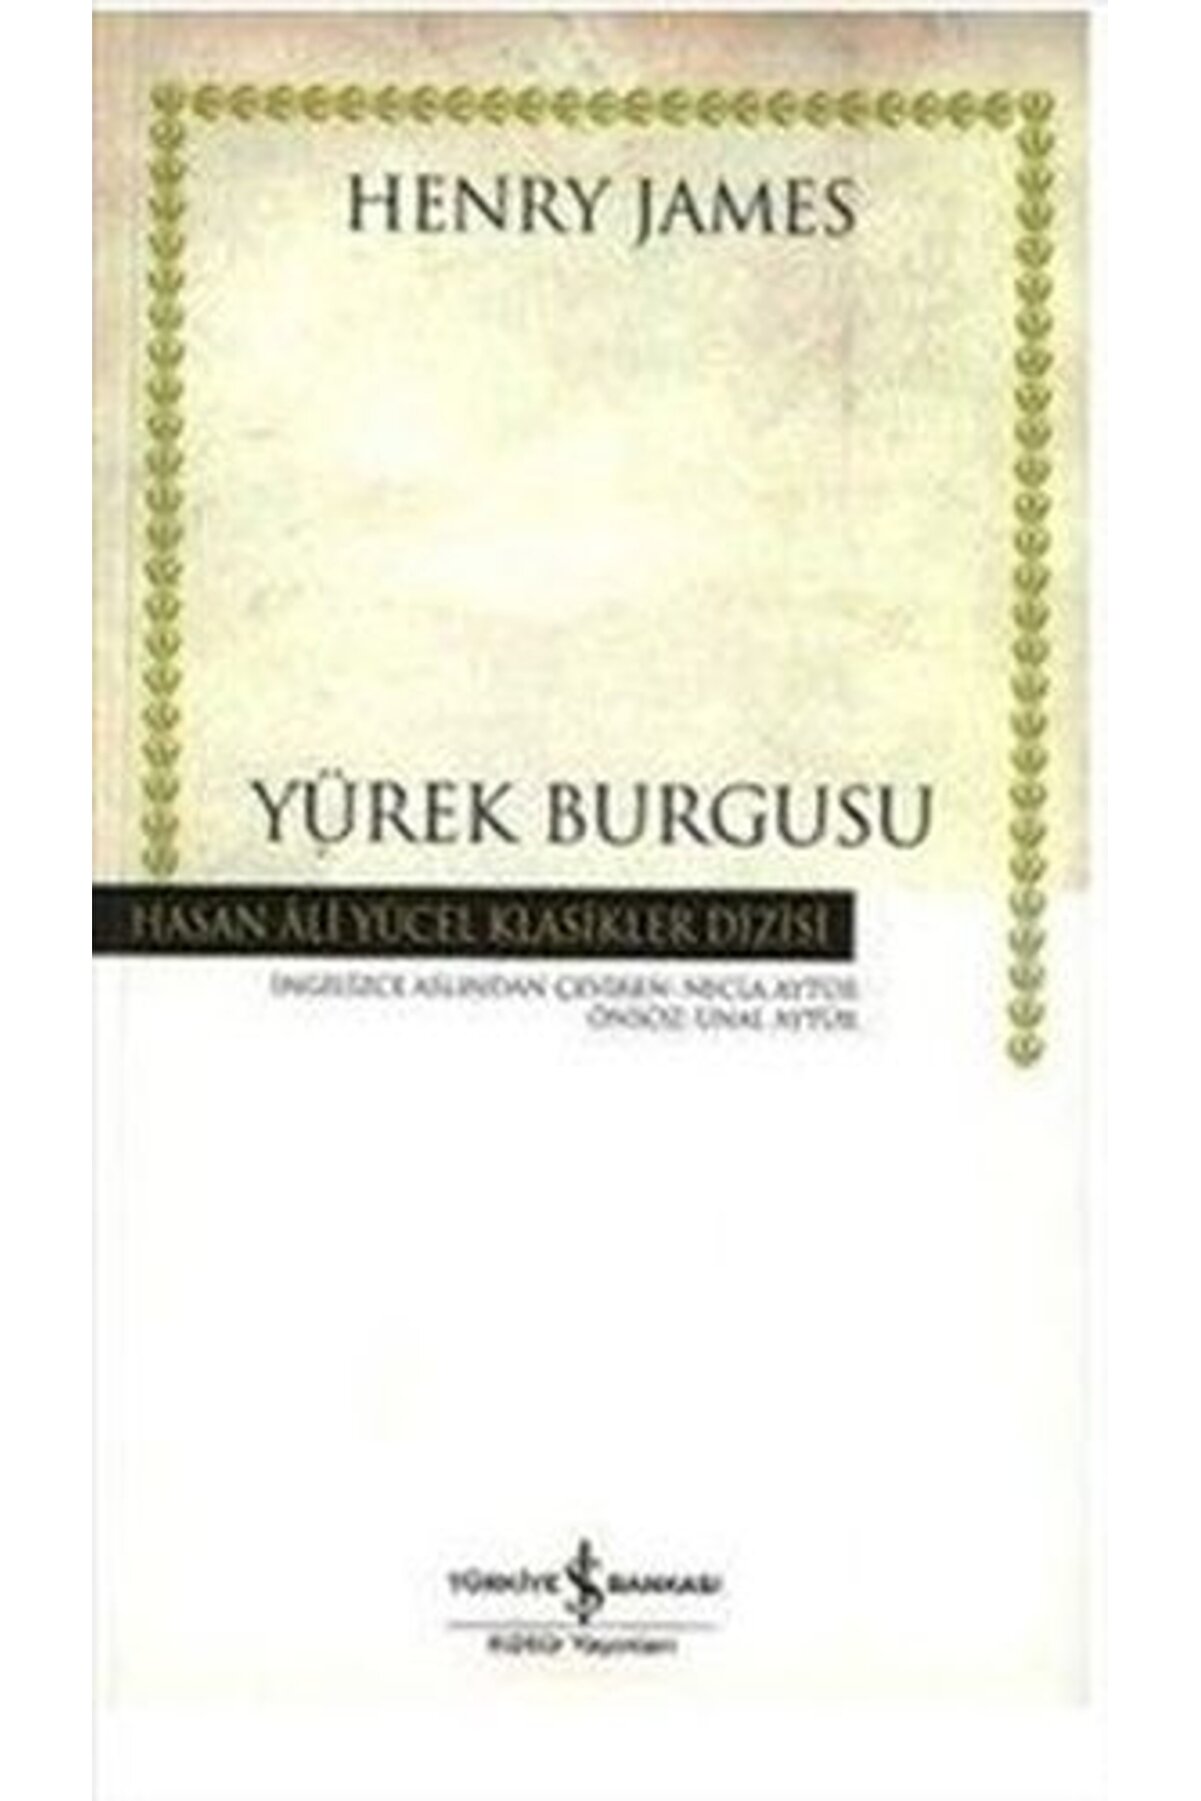 İş Bankası Kültür Yayınları Yürek Burgusu